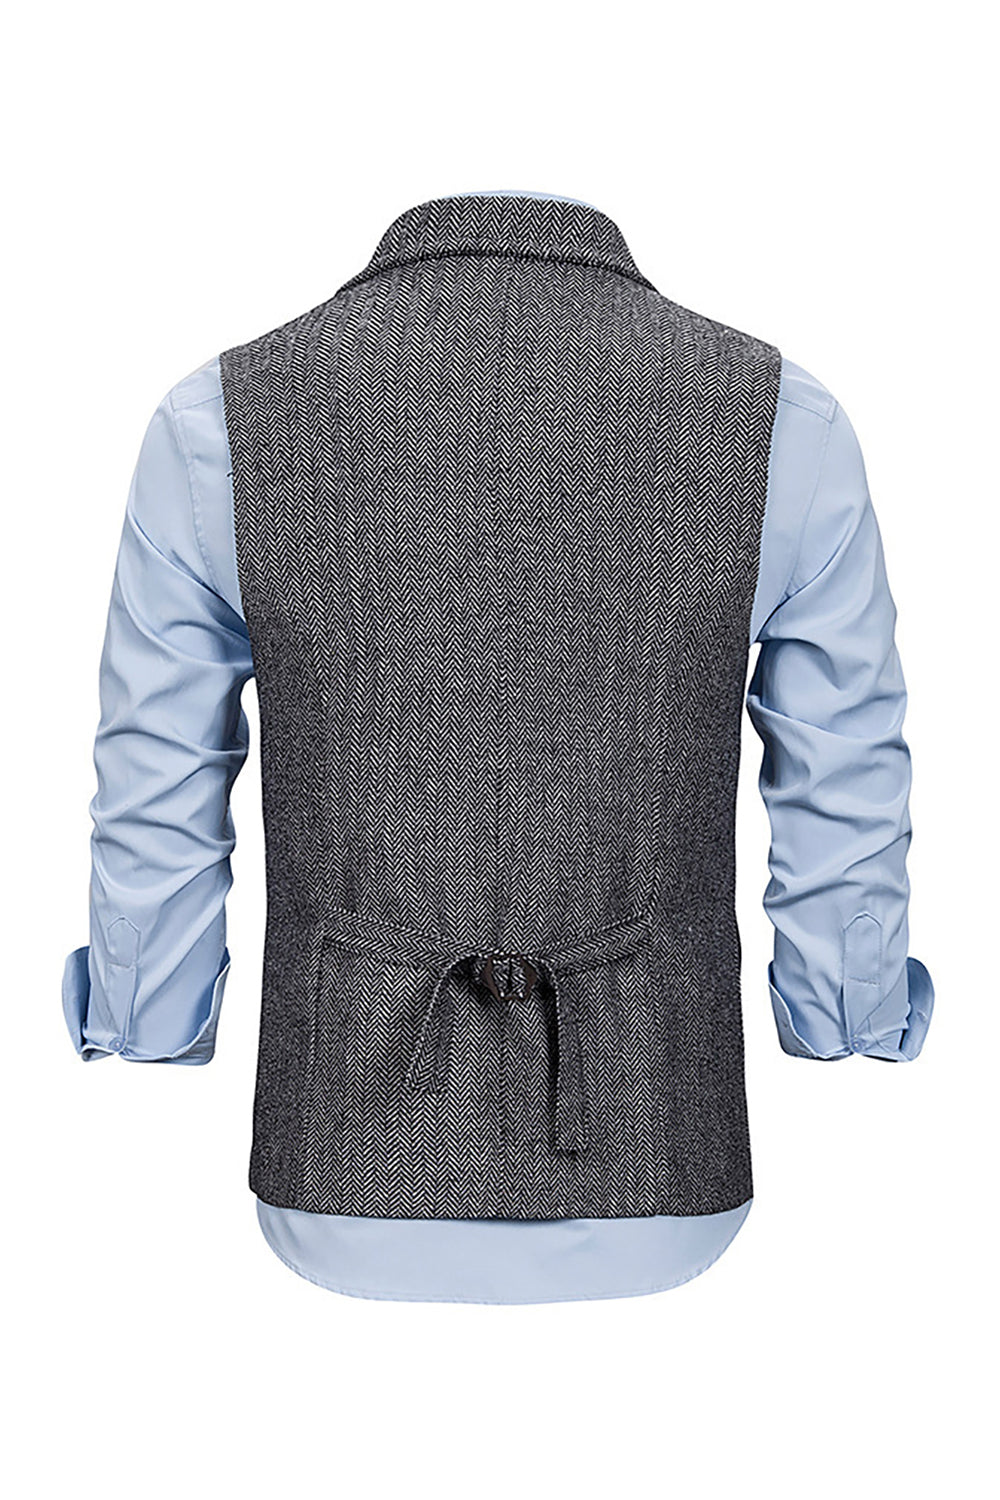 Grey Notched Lapel Men Vest with Shirts Accessories Set